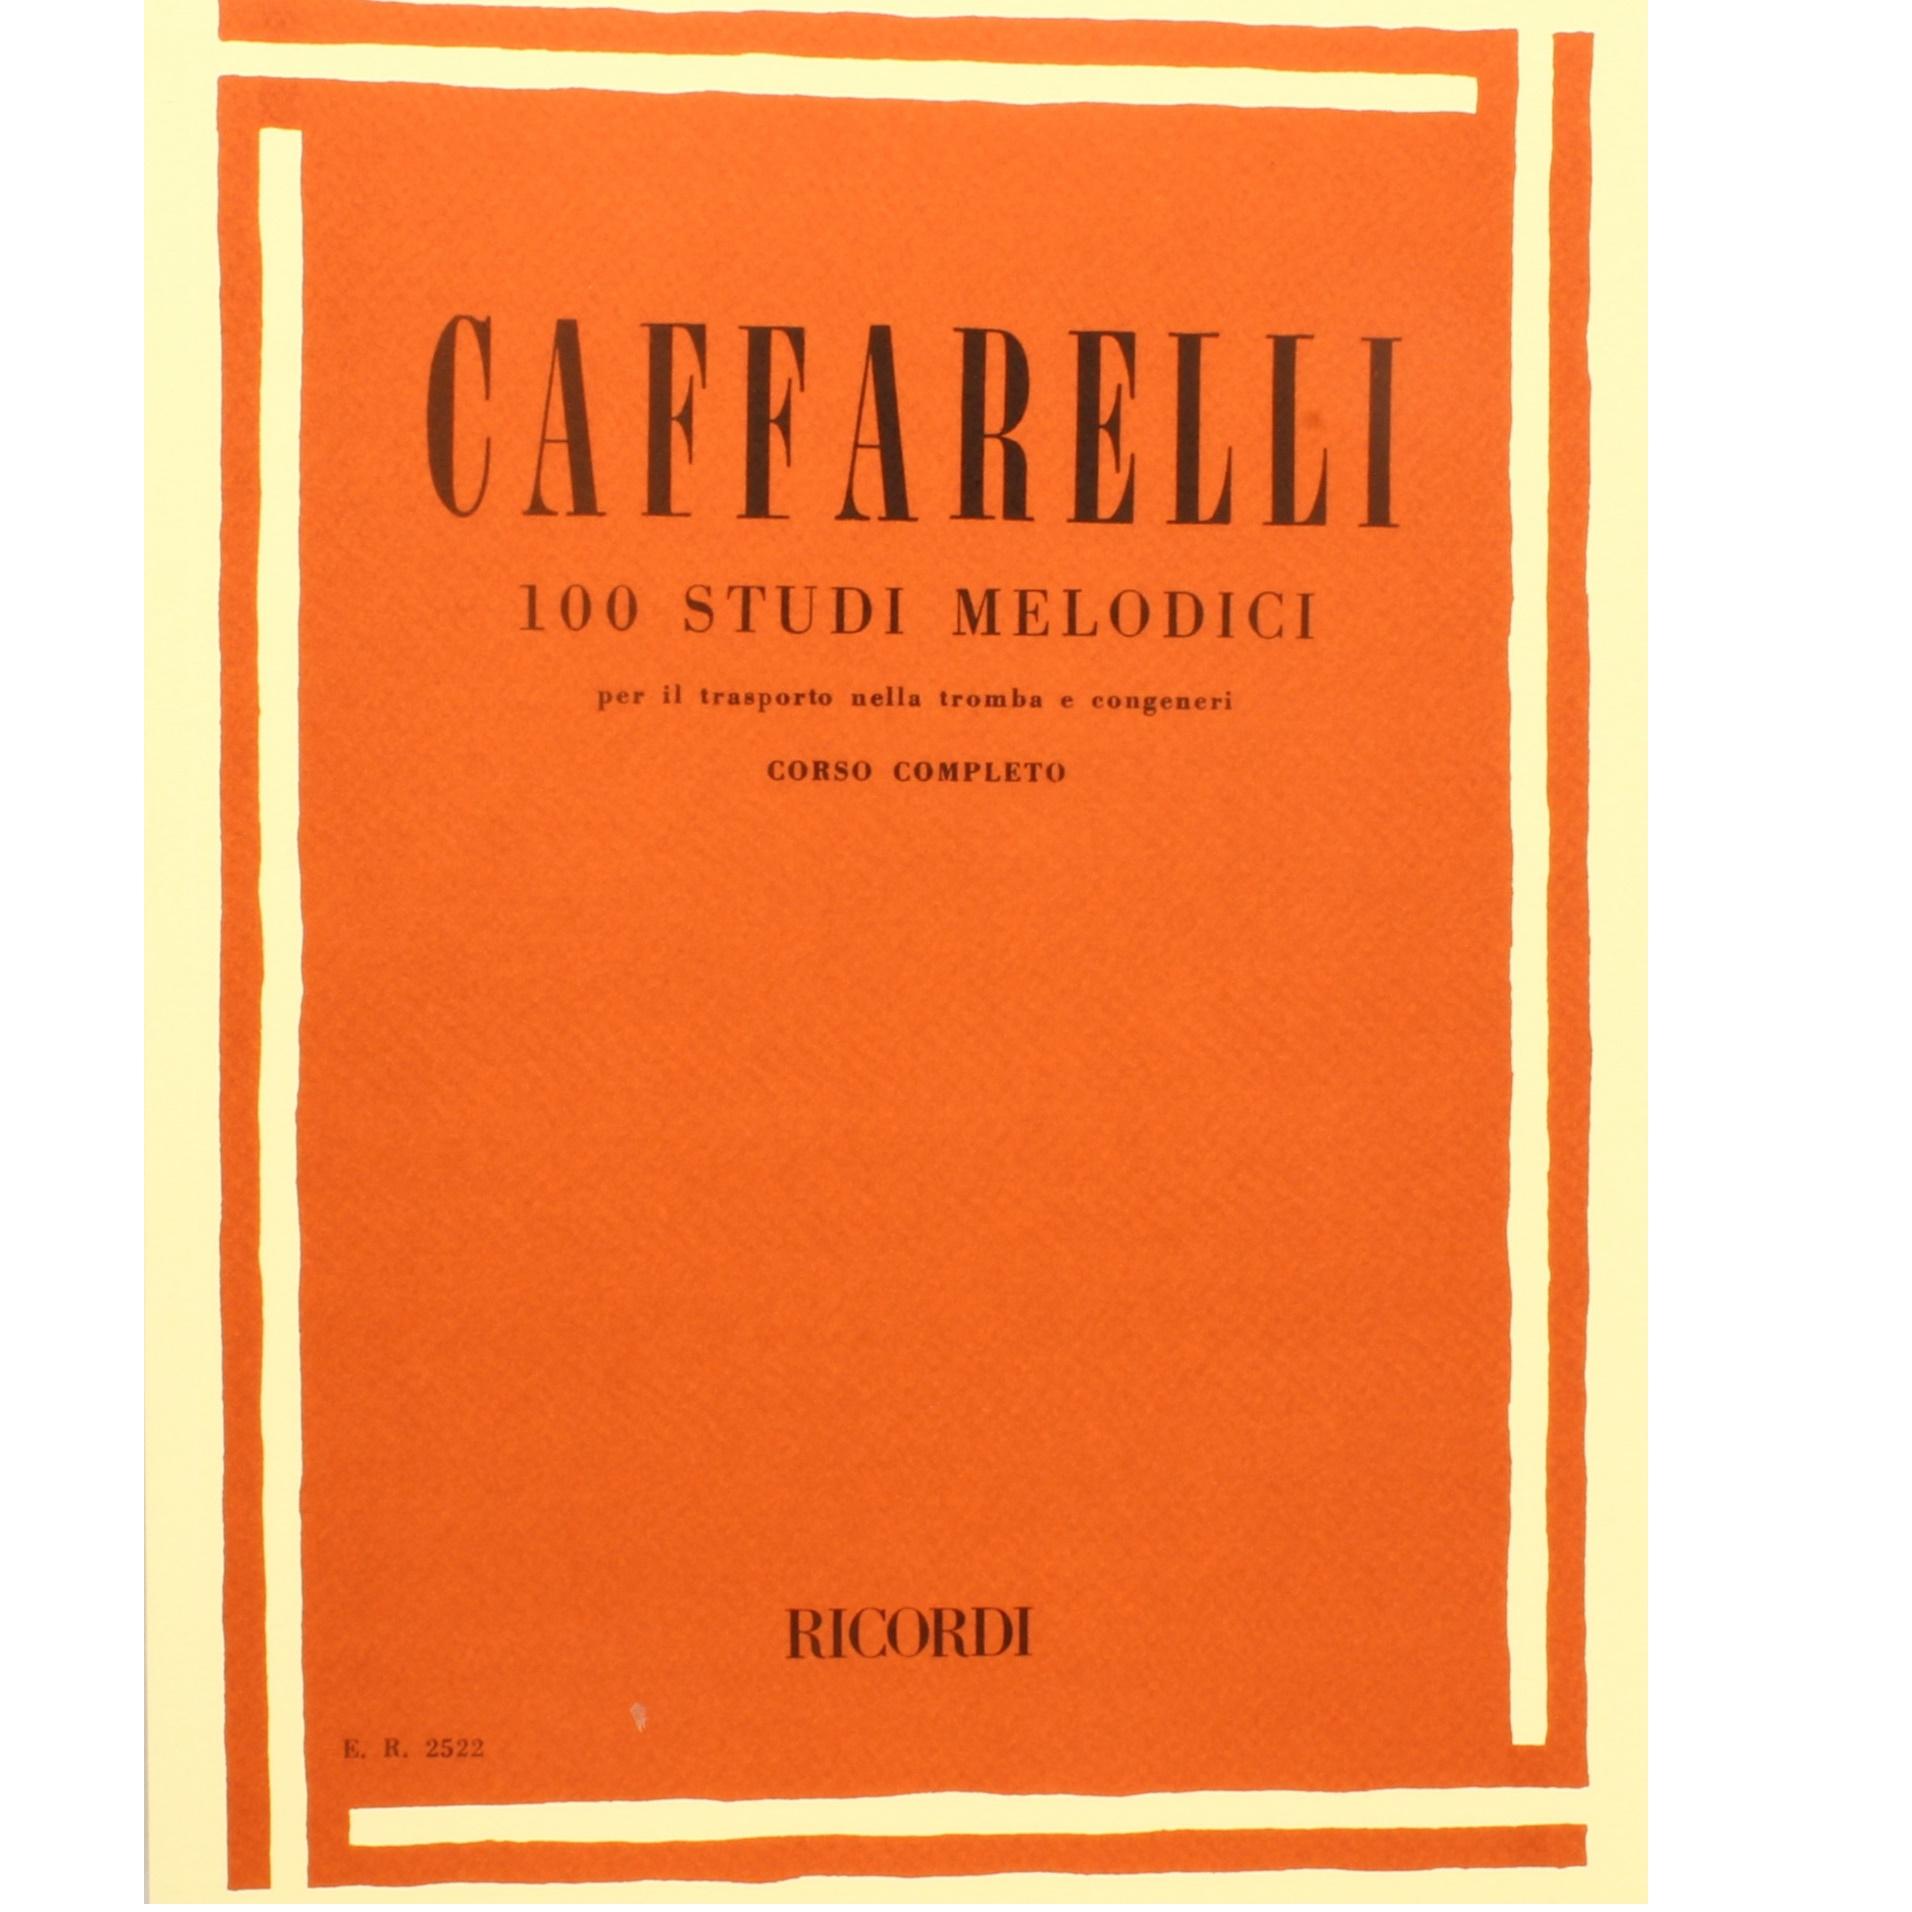 Caffarelli 100 Studi melodici per il trasporto nella tromba e congeneri Corso completo - Ricordi